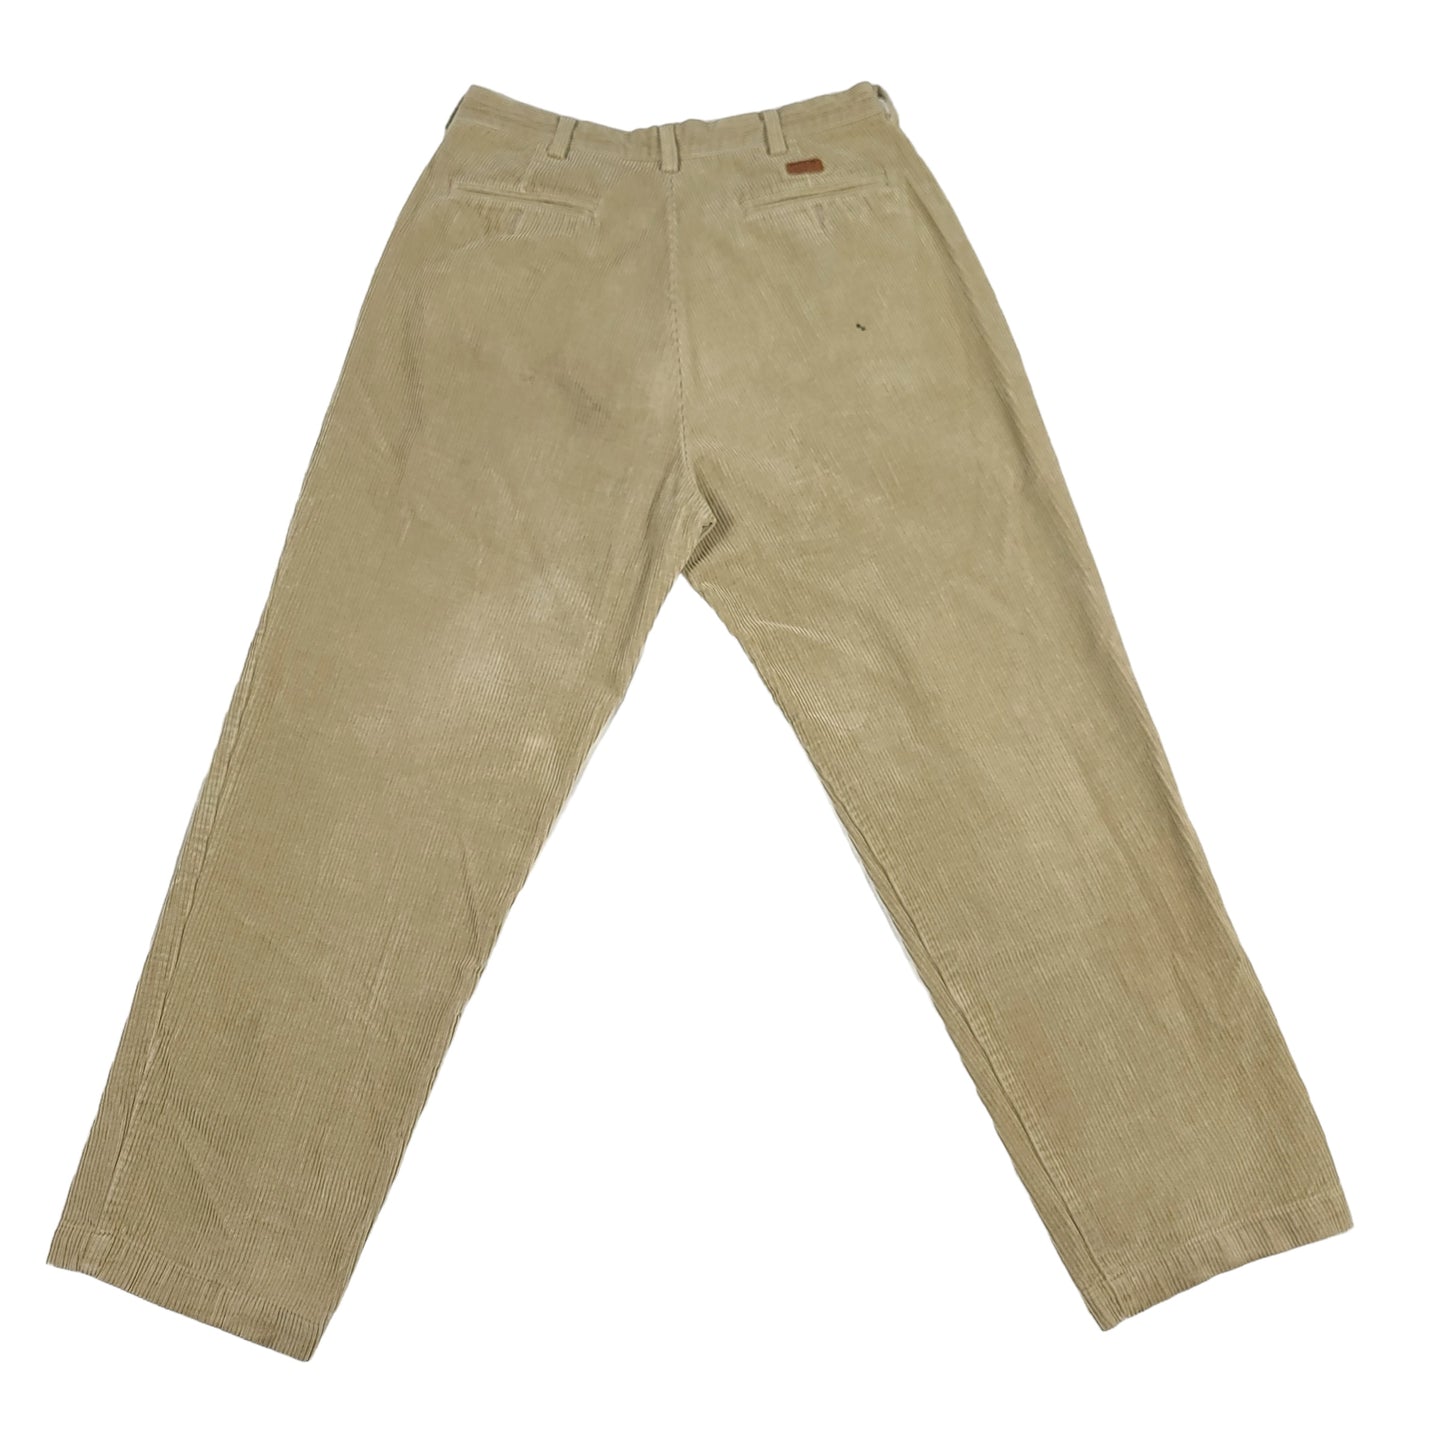 Vintage Polo Ralph Lauren Tan Corduroy Pants